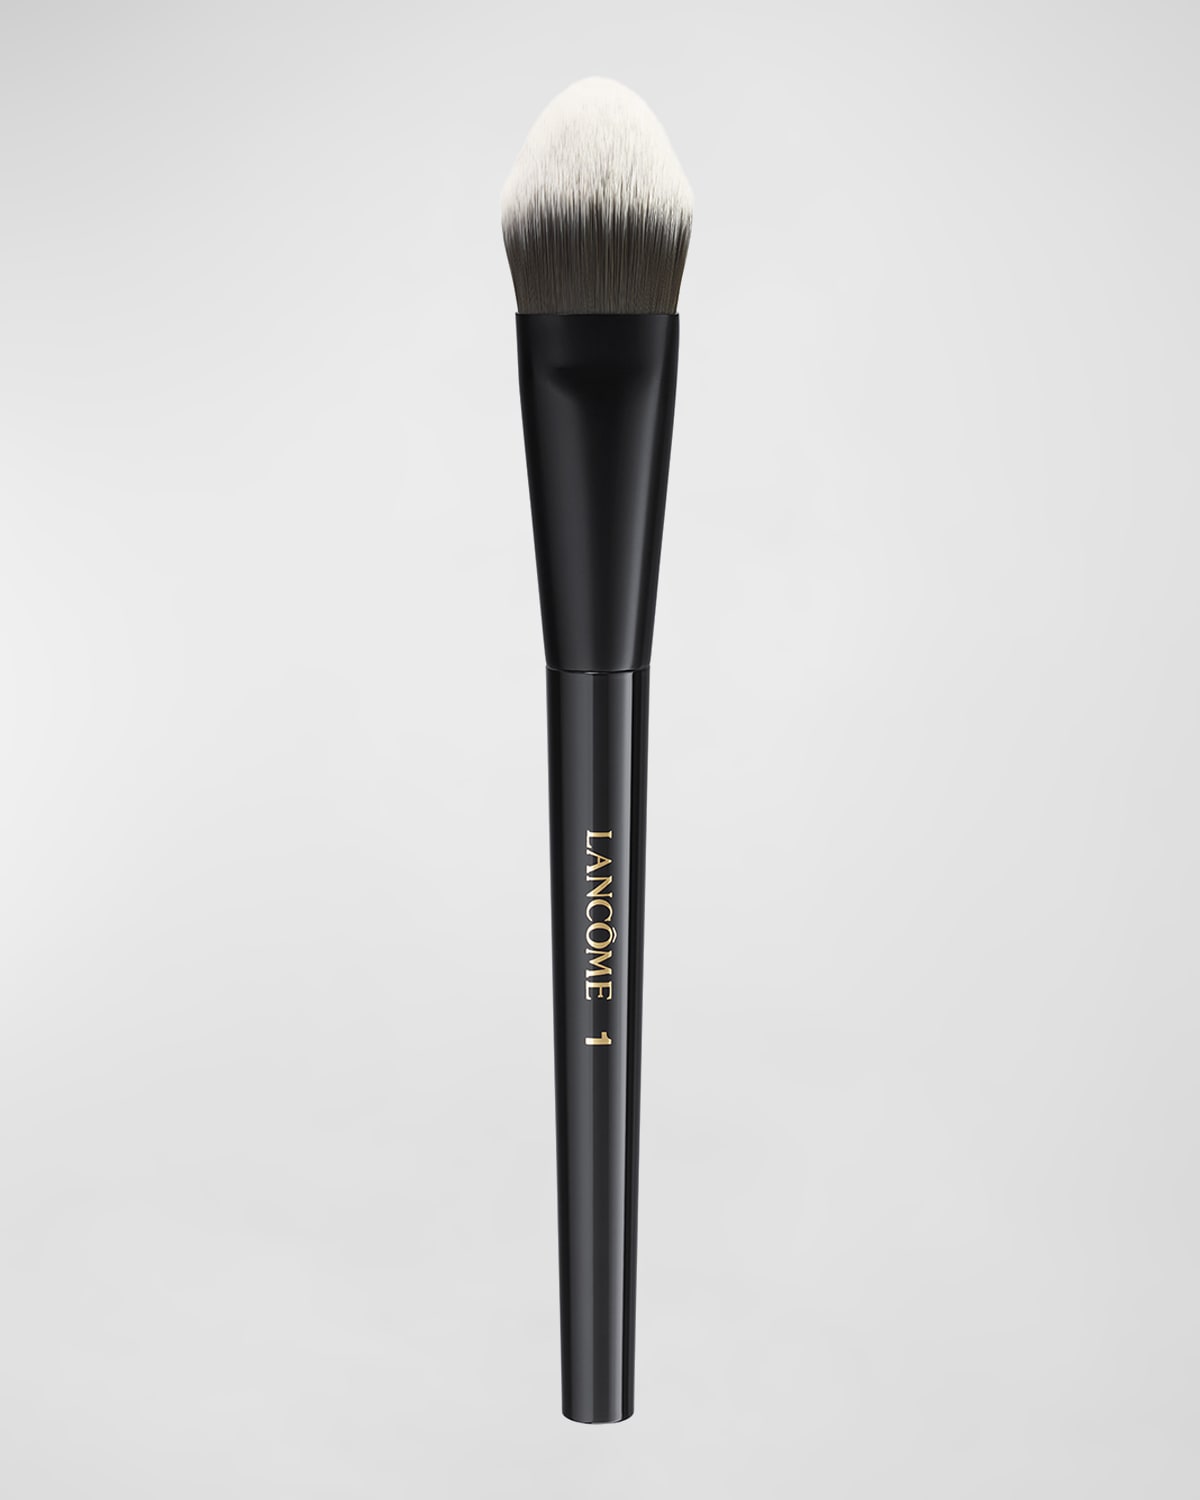 Lancôme Full Flat Brush #1 - Full Coverage Foundation Brush In Black